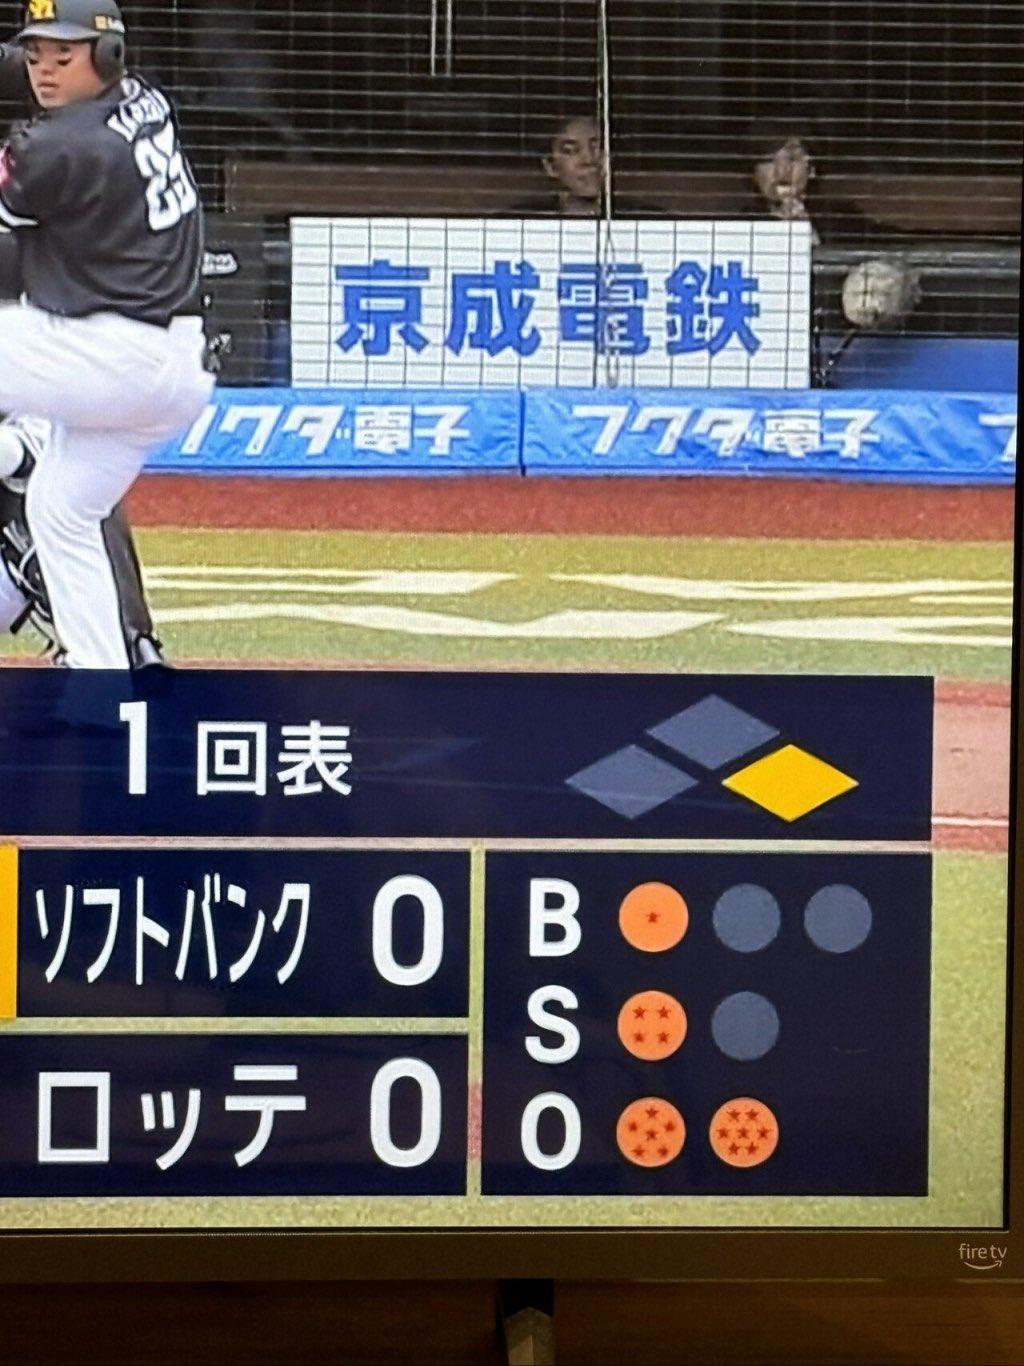 일본이 야구 중계로 토리야마 아키라를 추모하는 방법